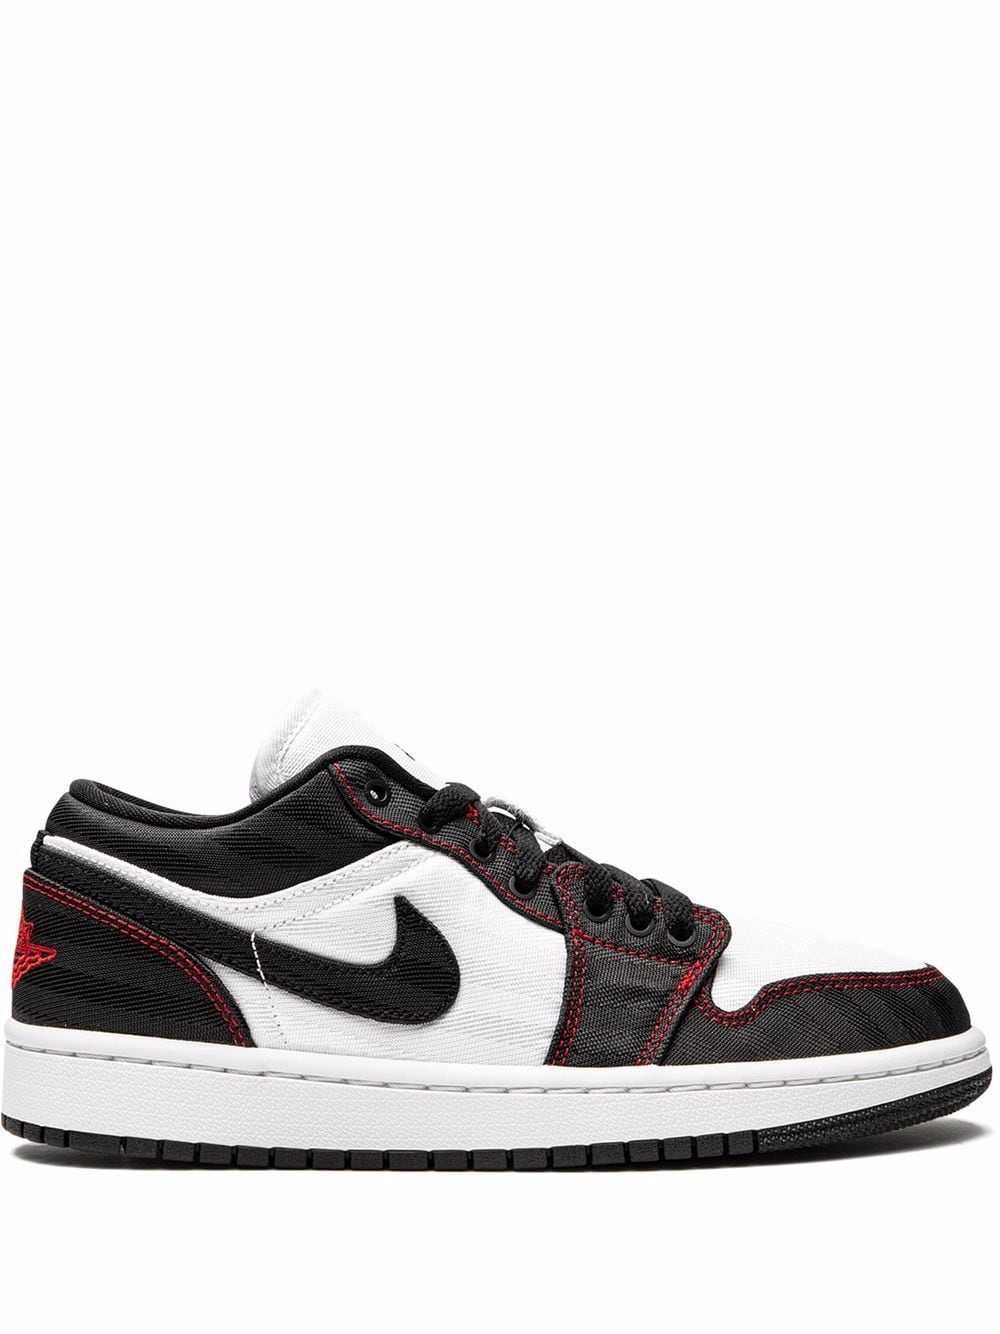 Jordan Air Jordan 1 Low Utility "White/Black/Red" sneakers